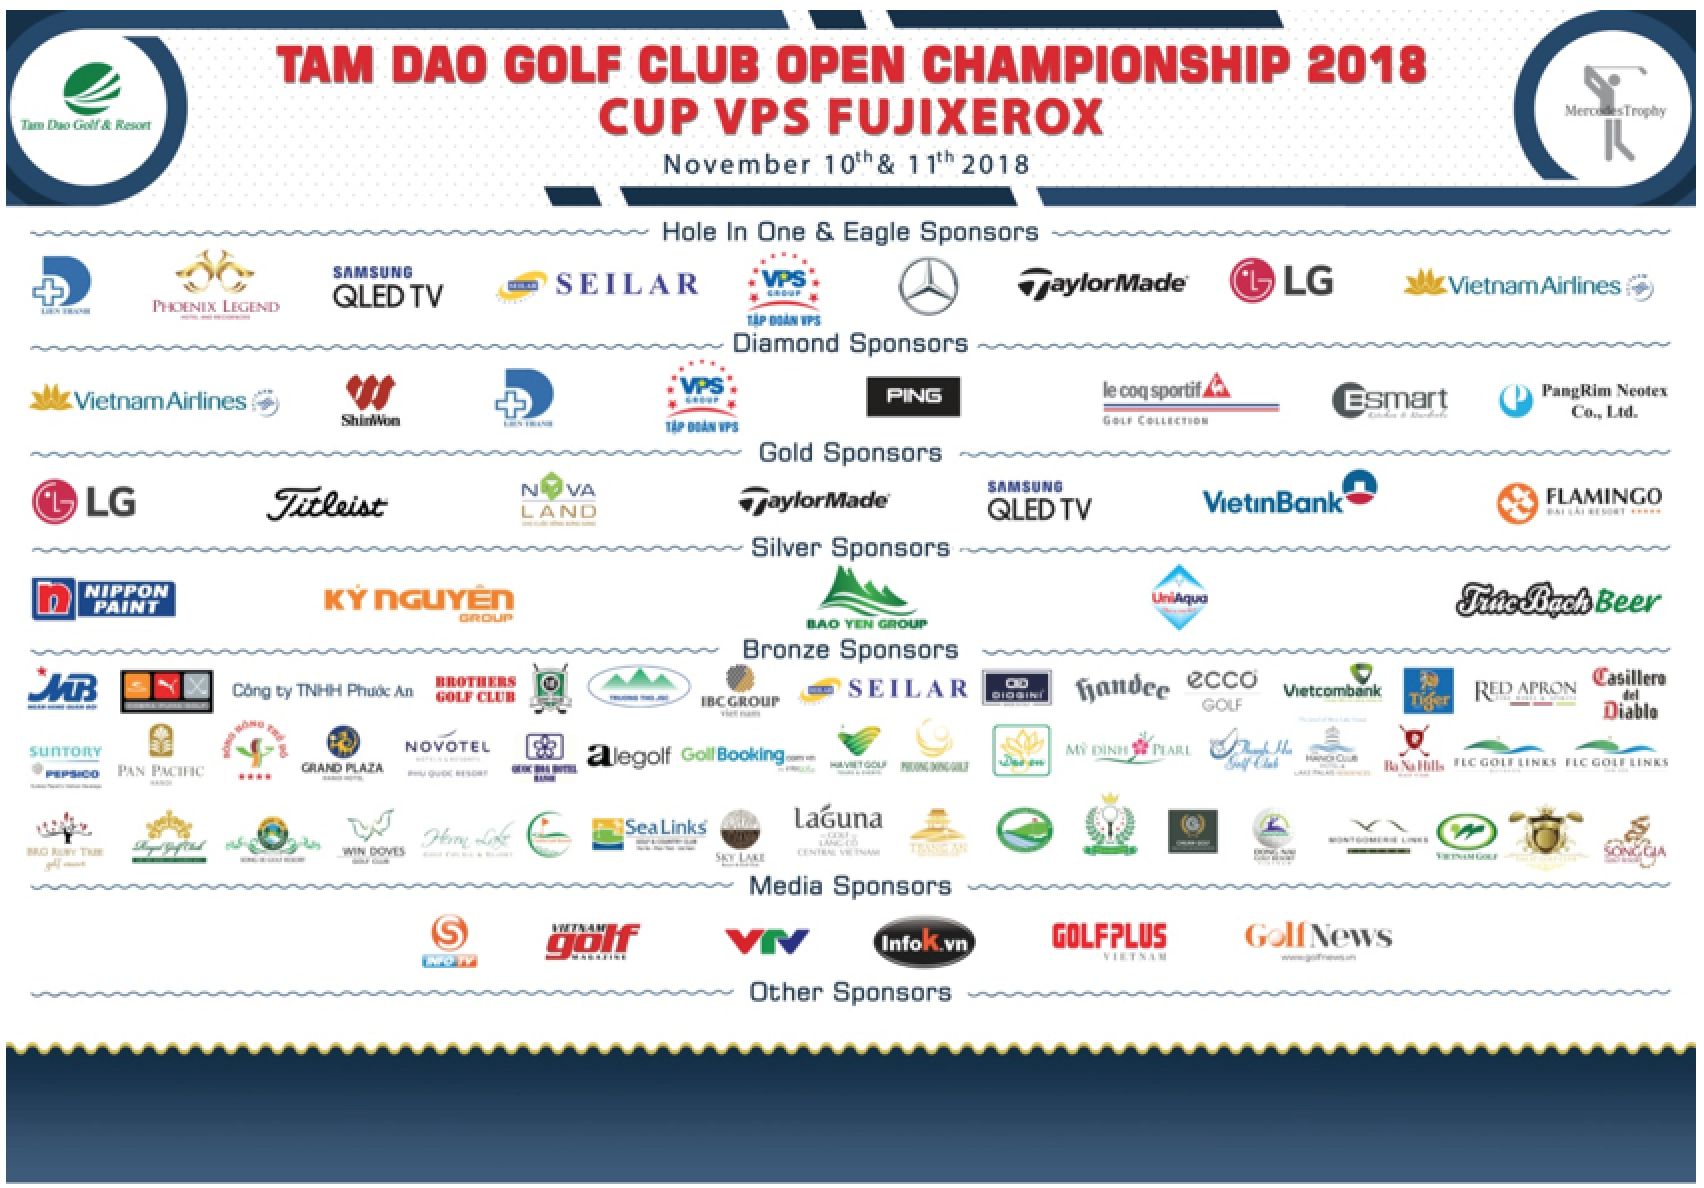 25 tỷ đồng giải thưởng tại giải Tam Dao Golf Club Open Championship 2018 – Cup VPS Fujixerox